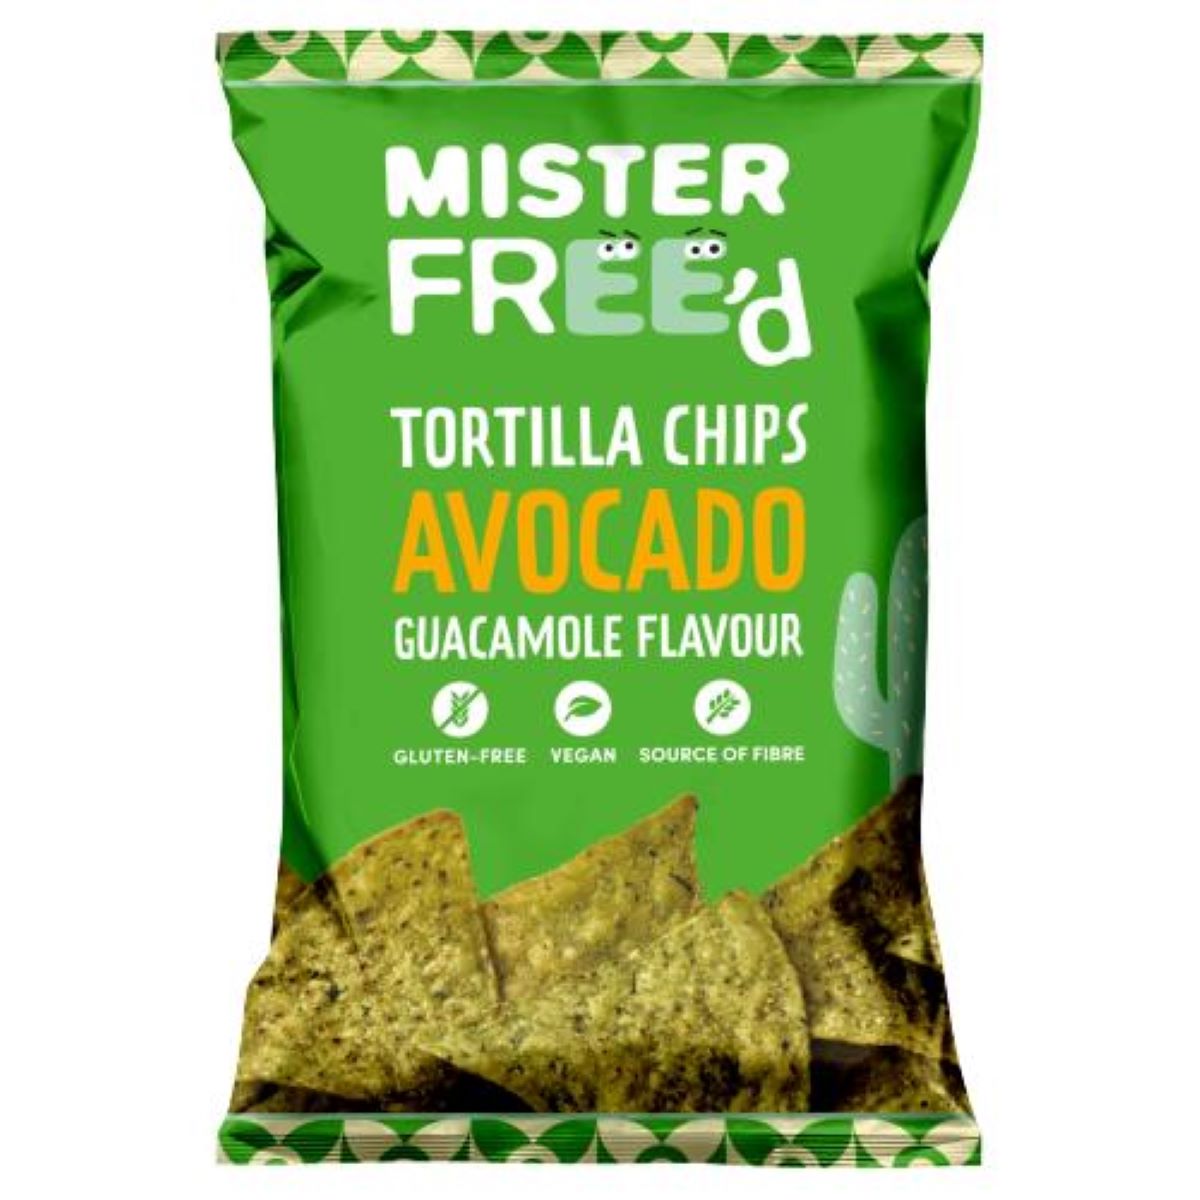 Mister Free'd Tortilla Chips Avocado 135g